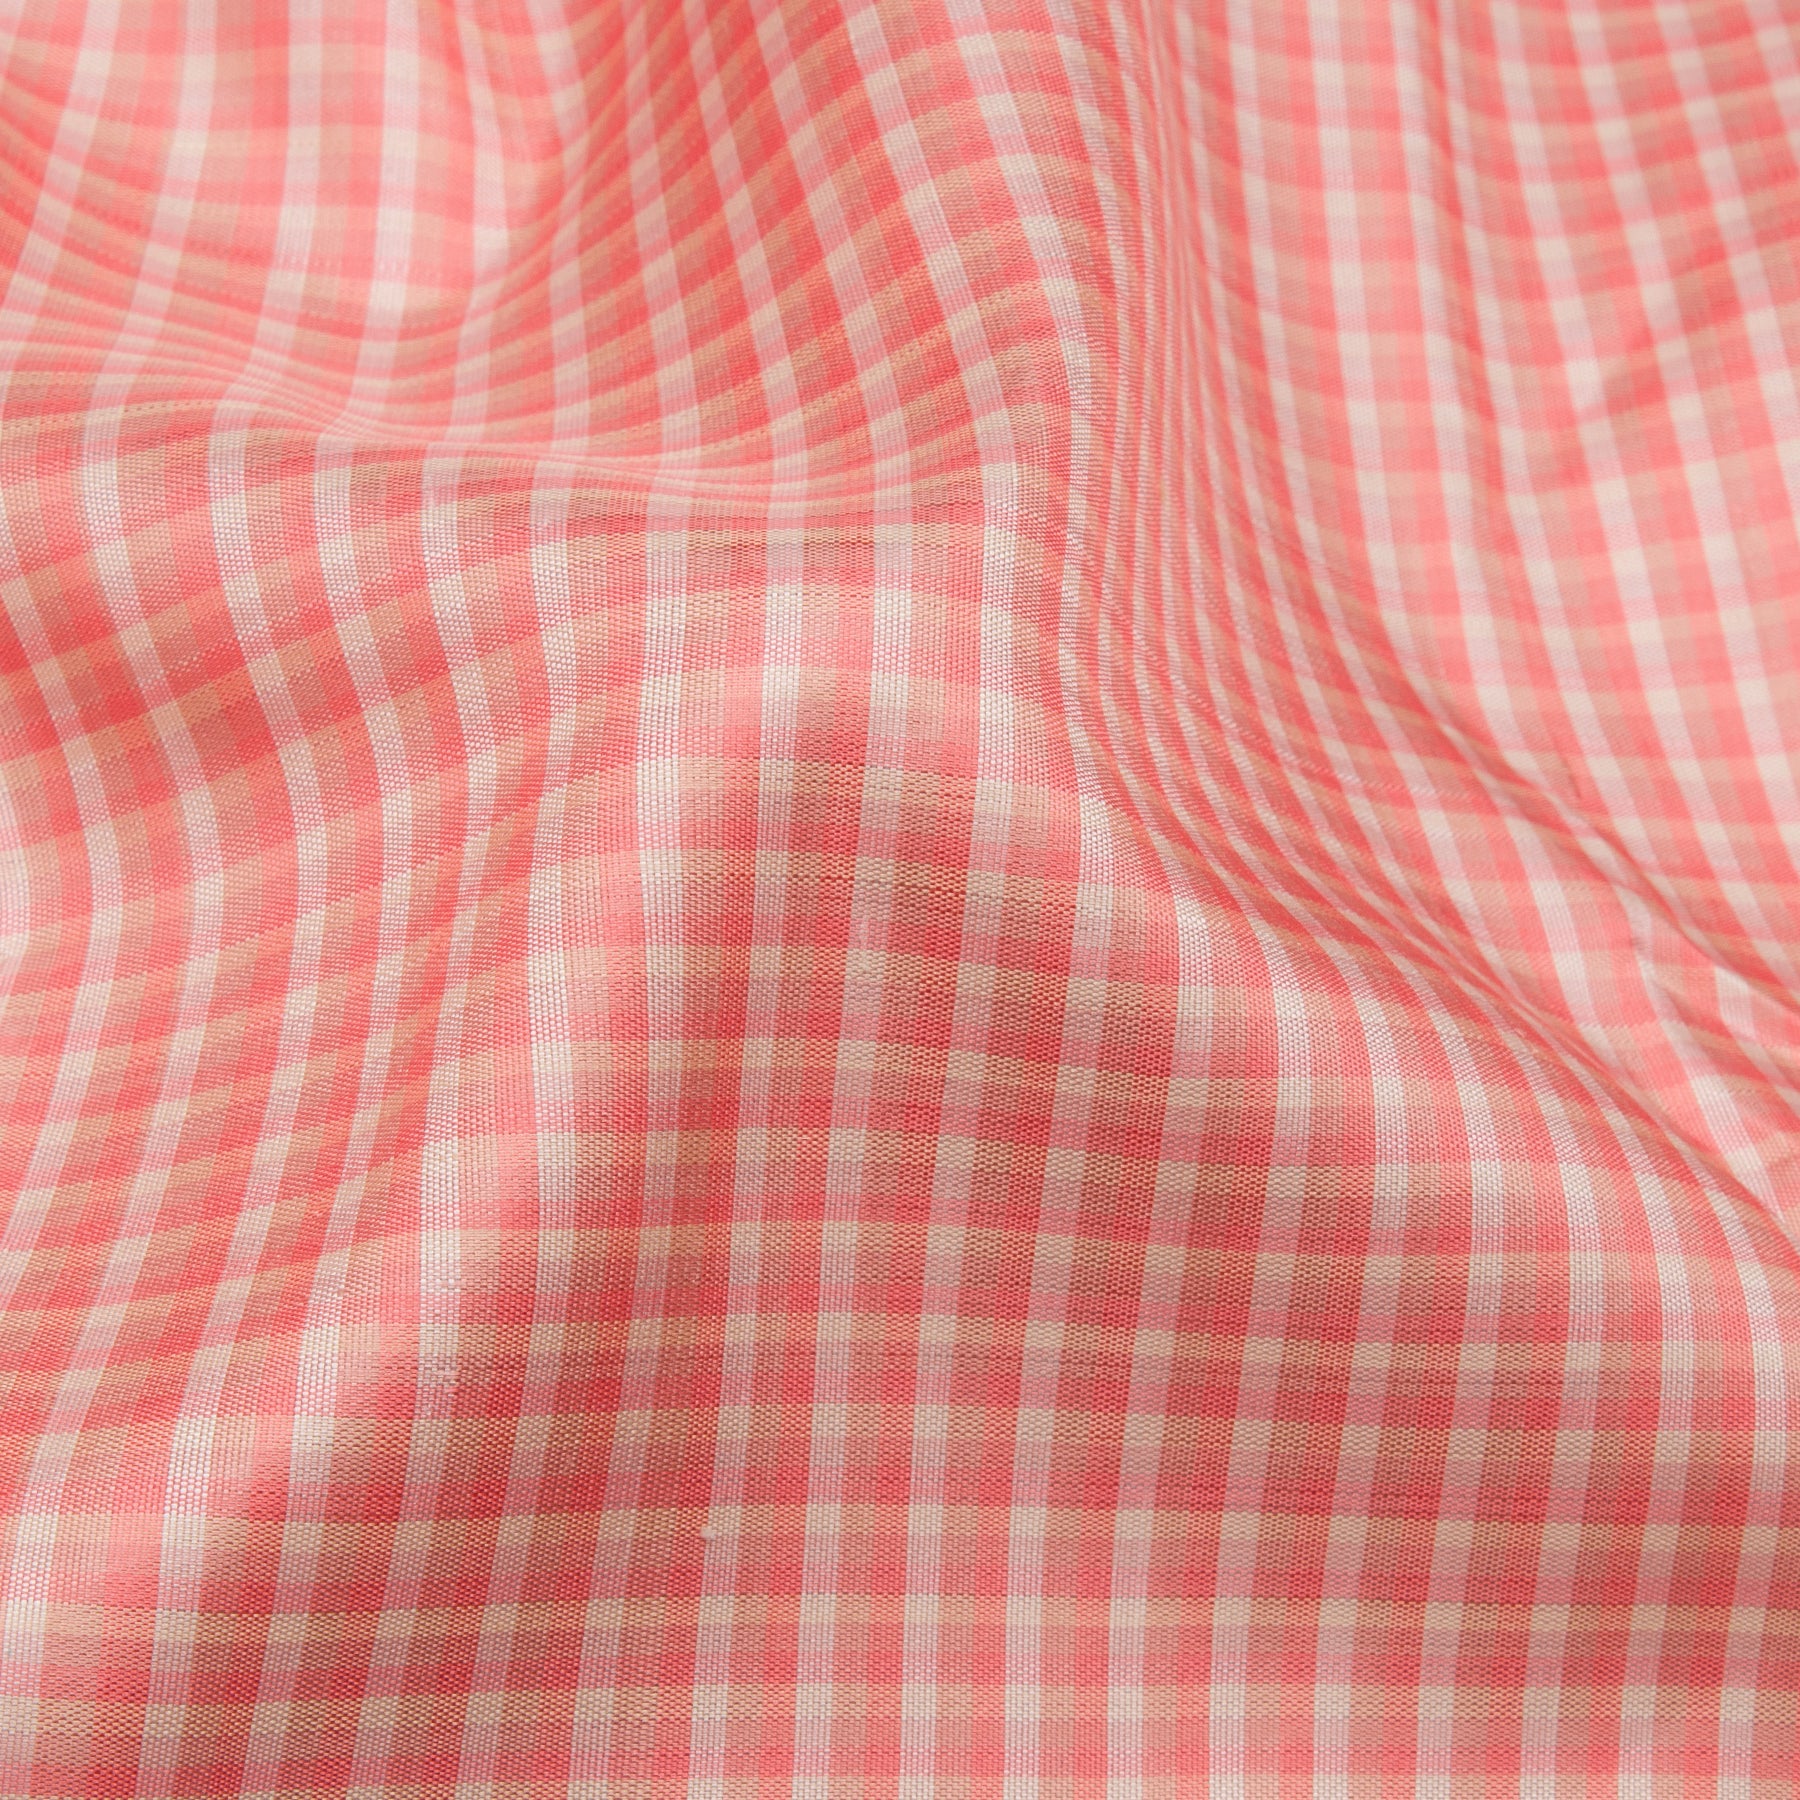 Kanakavalli Kanjivaram Silk Sari 23-520-HS001-13114 - Fabric View